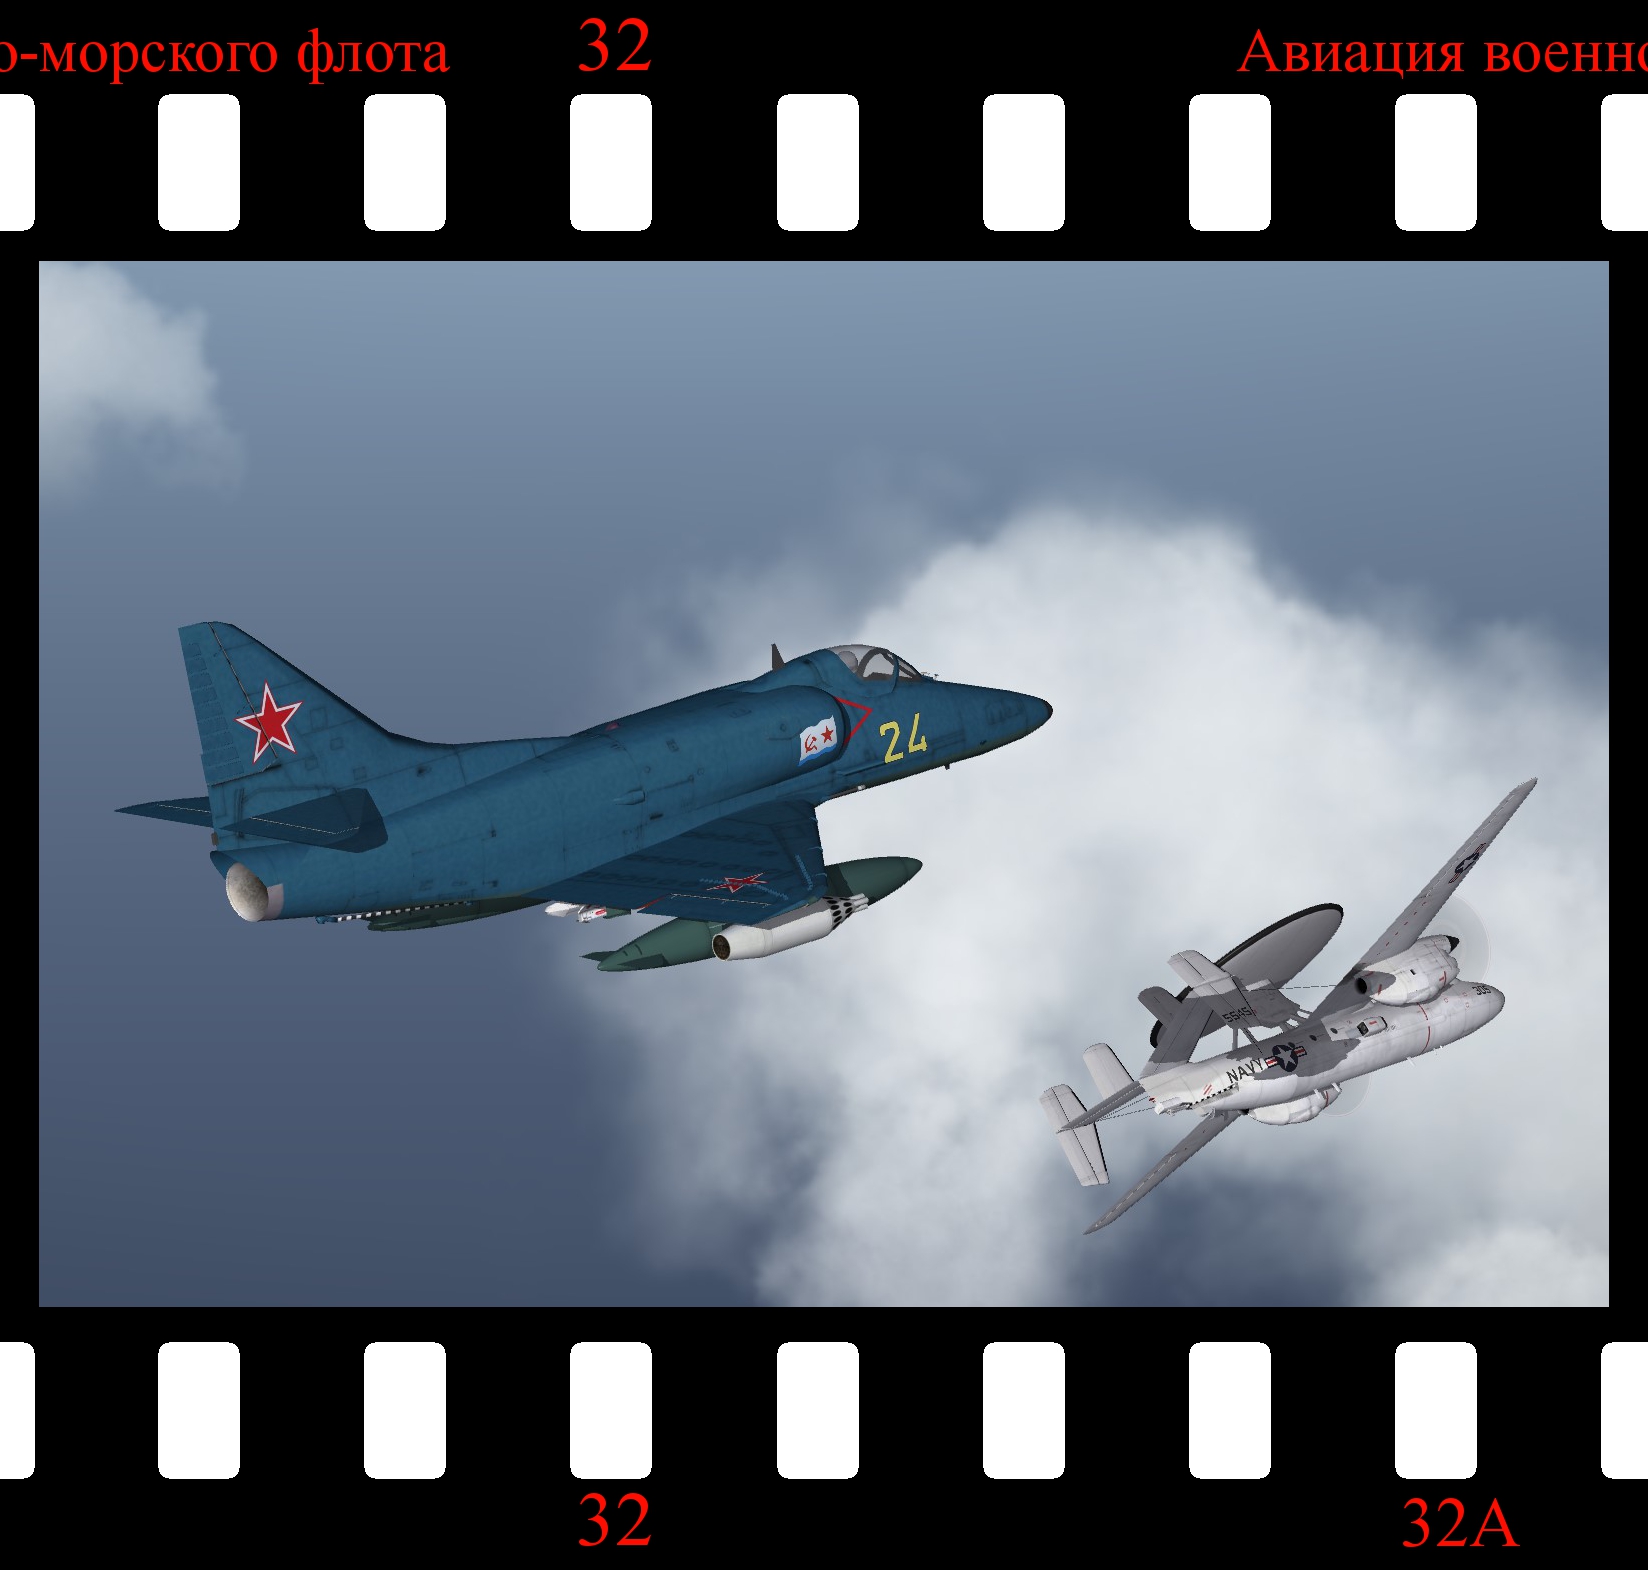 [Fictional] Lavochkin La-19 'Flipflop' (Soviet Skyhawk)